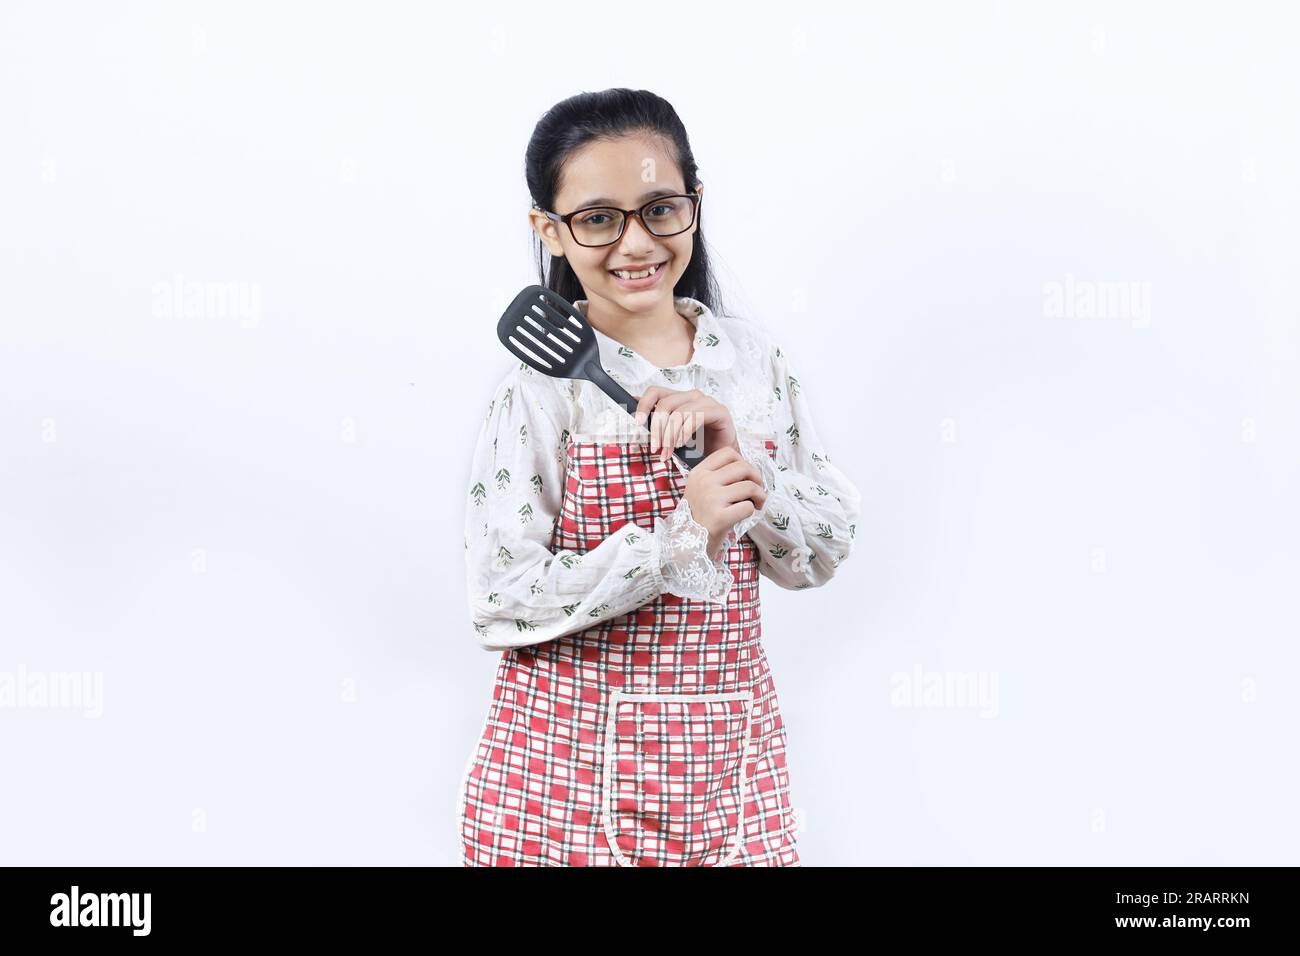 Portrait d'une adolescente indienne heureuse dans la cuisine tenant des accessoires de cuisine. Rolling Rin, cuillère à frire, louche, poêle à frire. Joyeux et joyeux jeune Banque D'Images